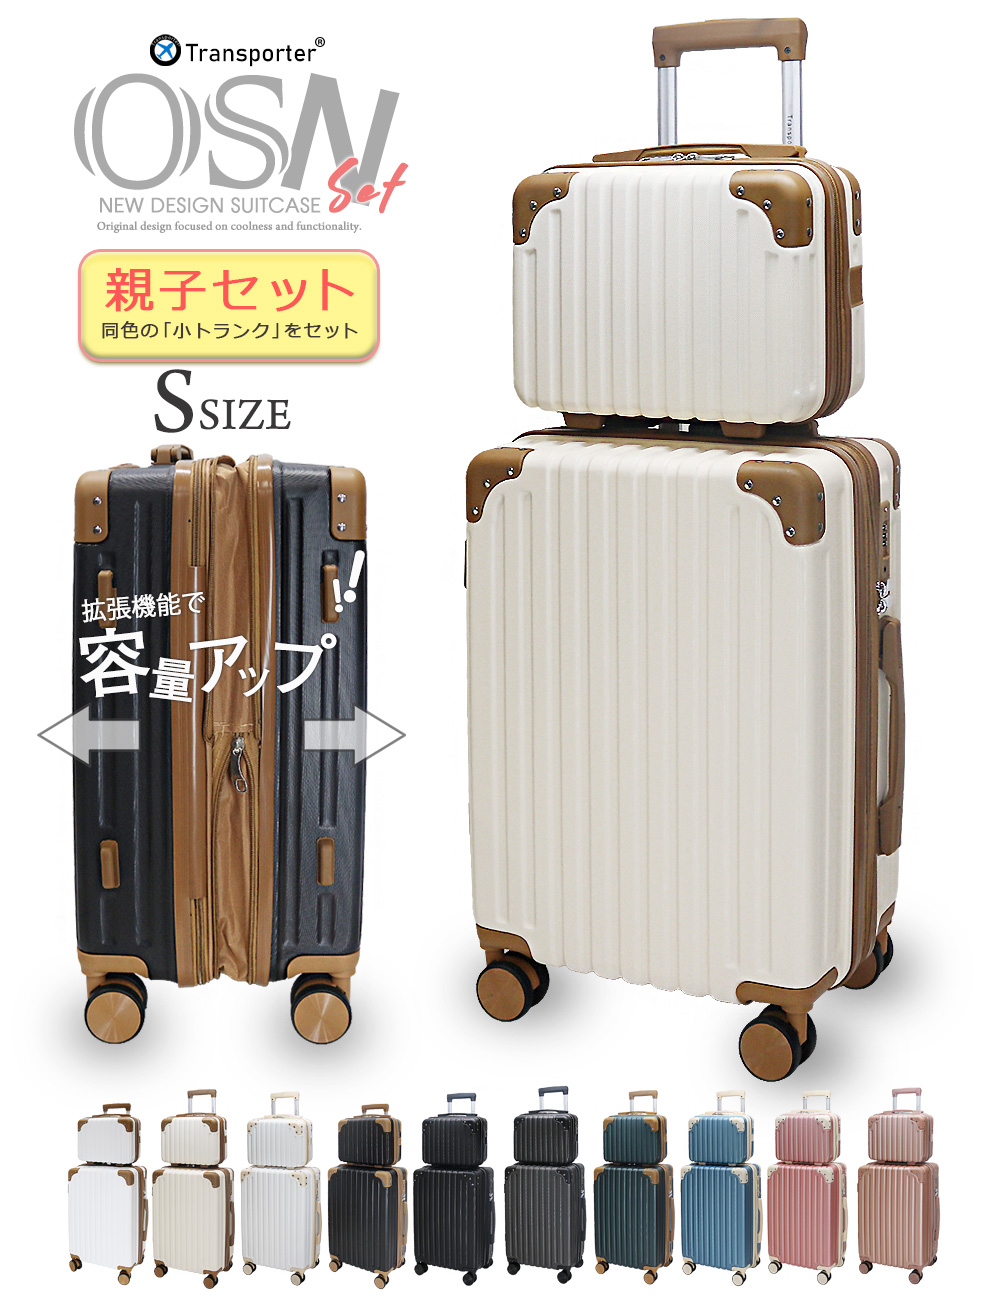 Transporter スーツケース Sサイズ 親子 セット キャリーケース 